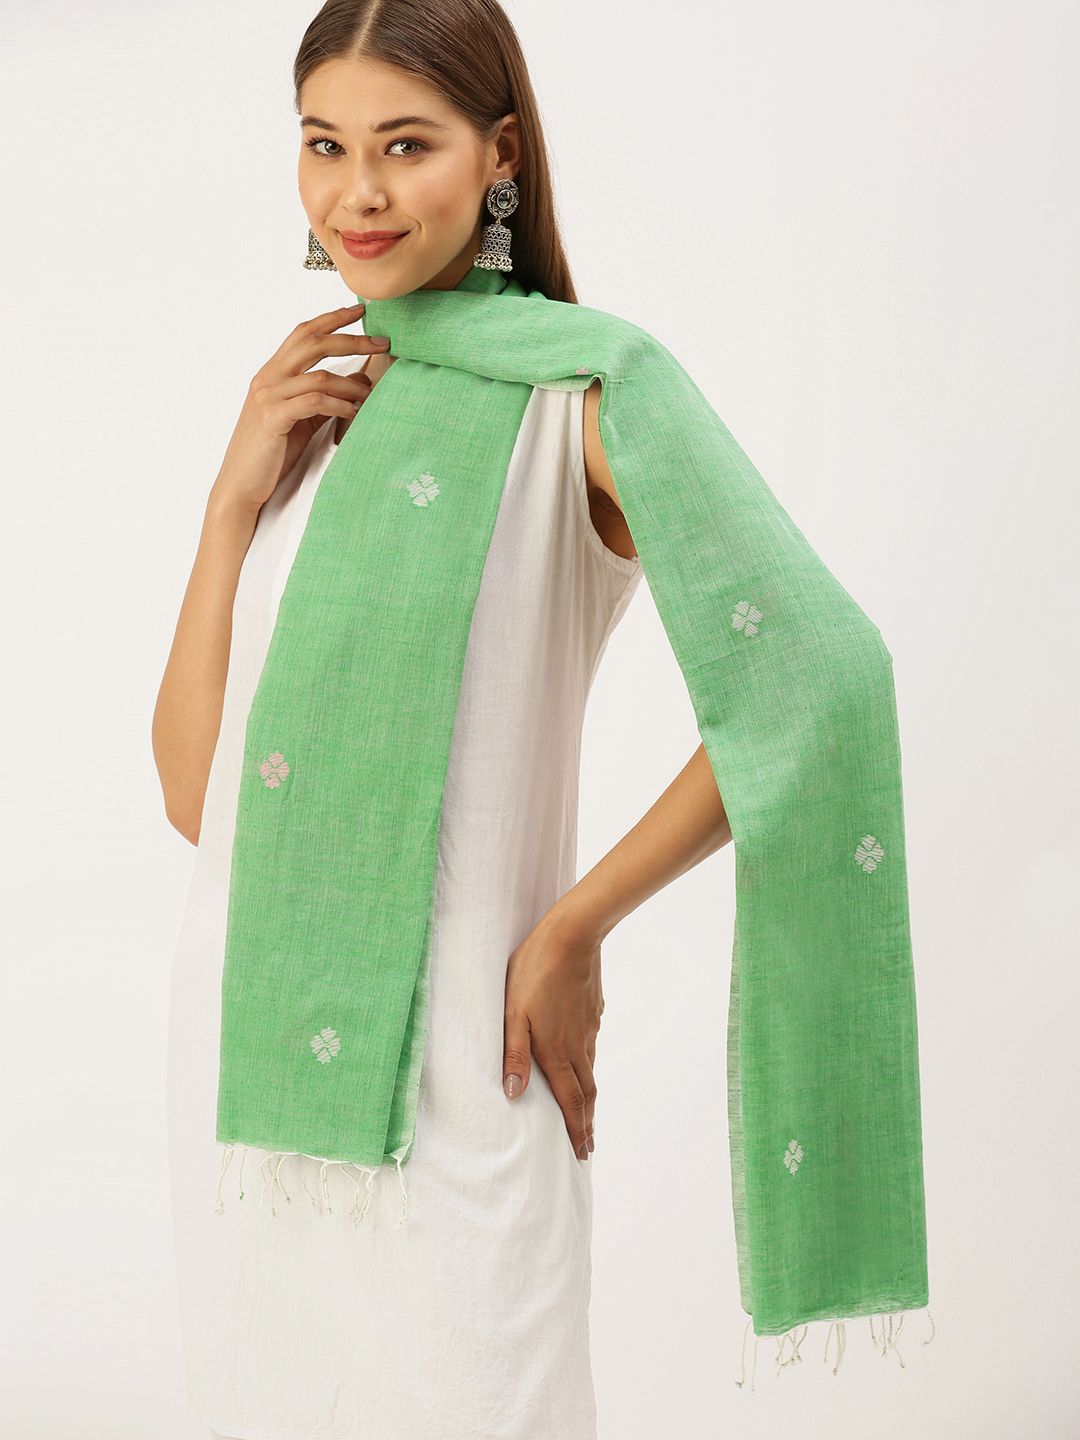 ArtEastri Women Green & White Woven Design Stole Price in India